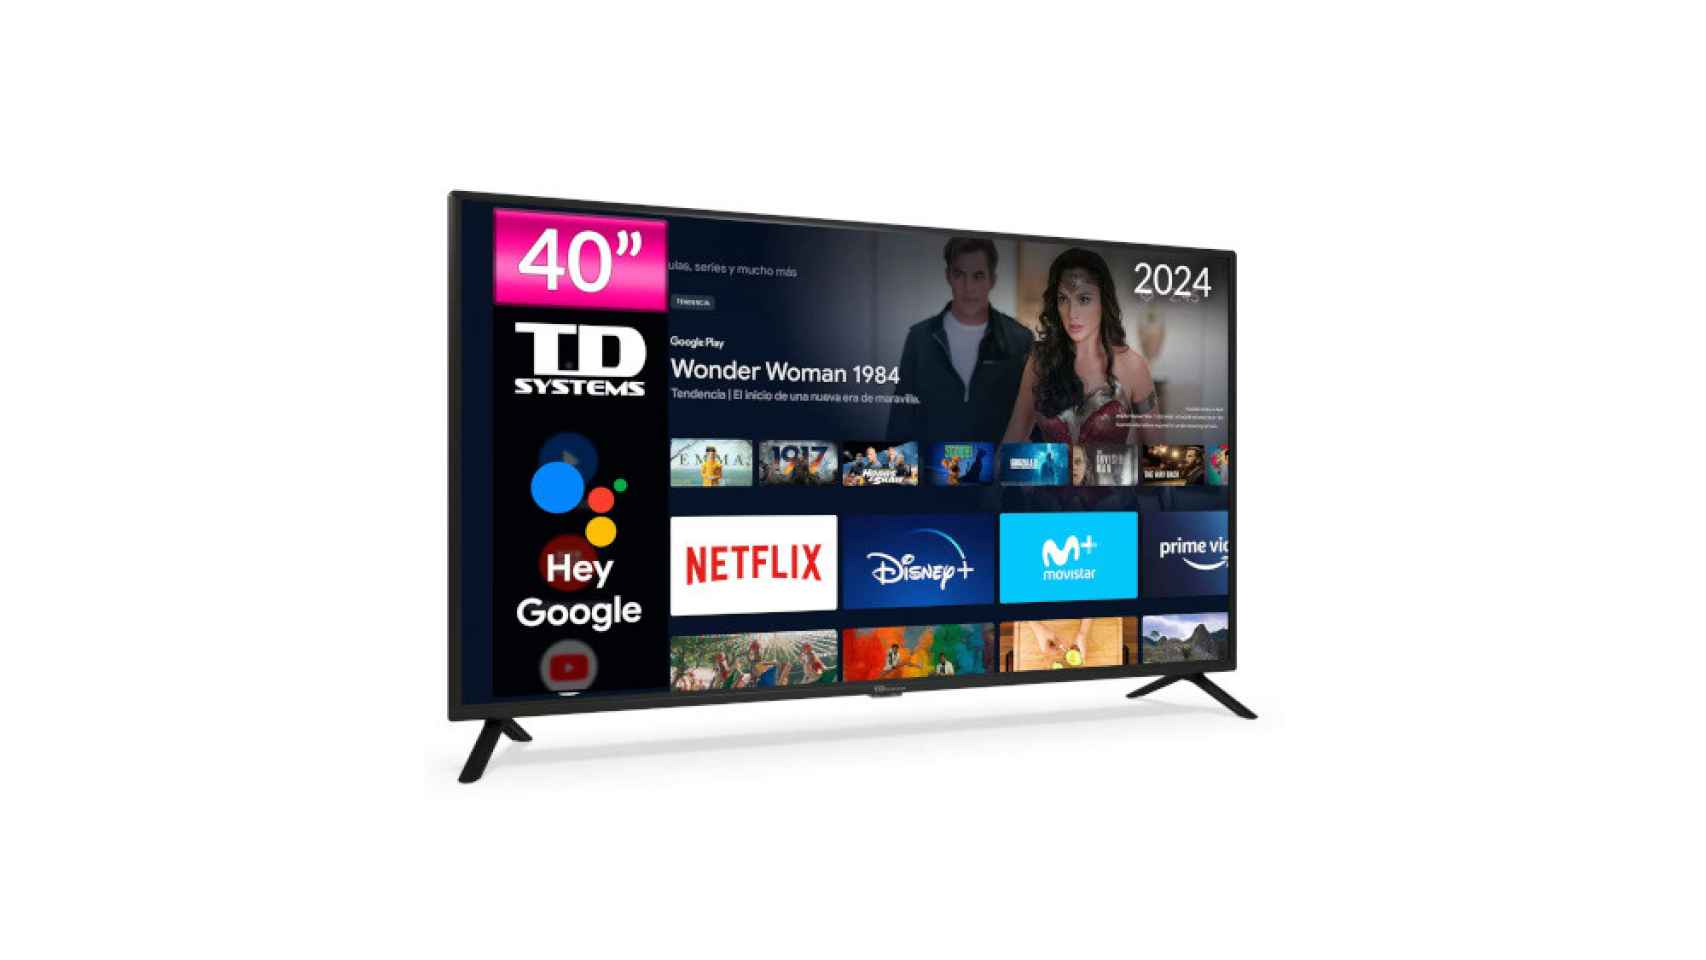 Las Smart TV de 43 pulgadas con mejor relación calidad-precio